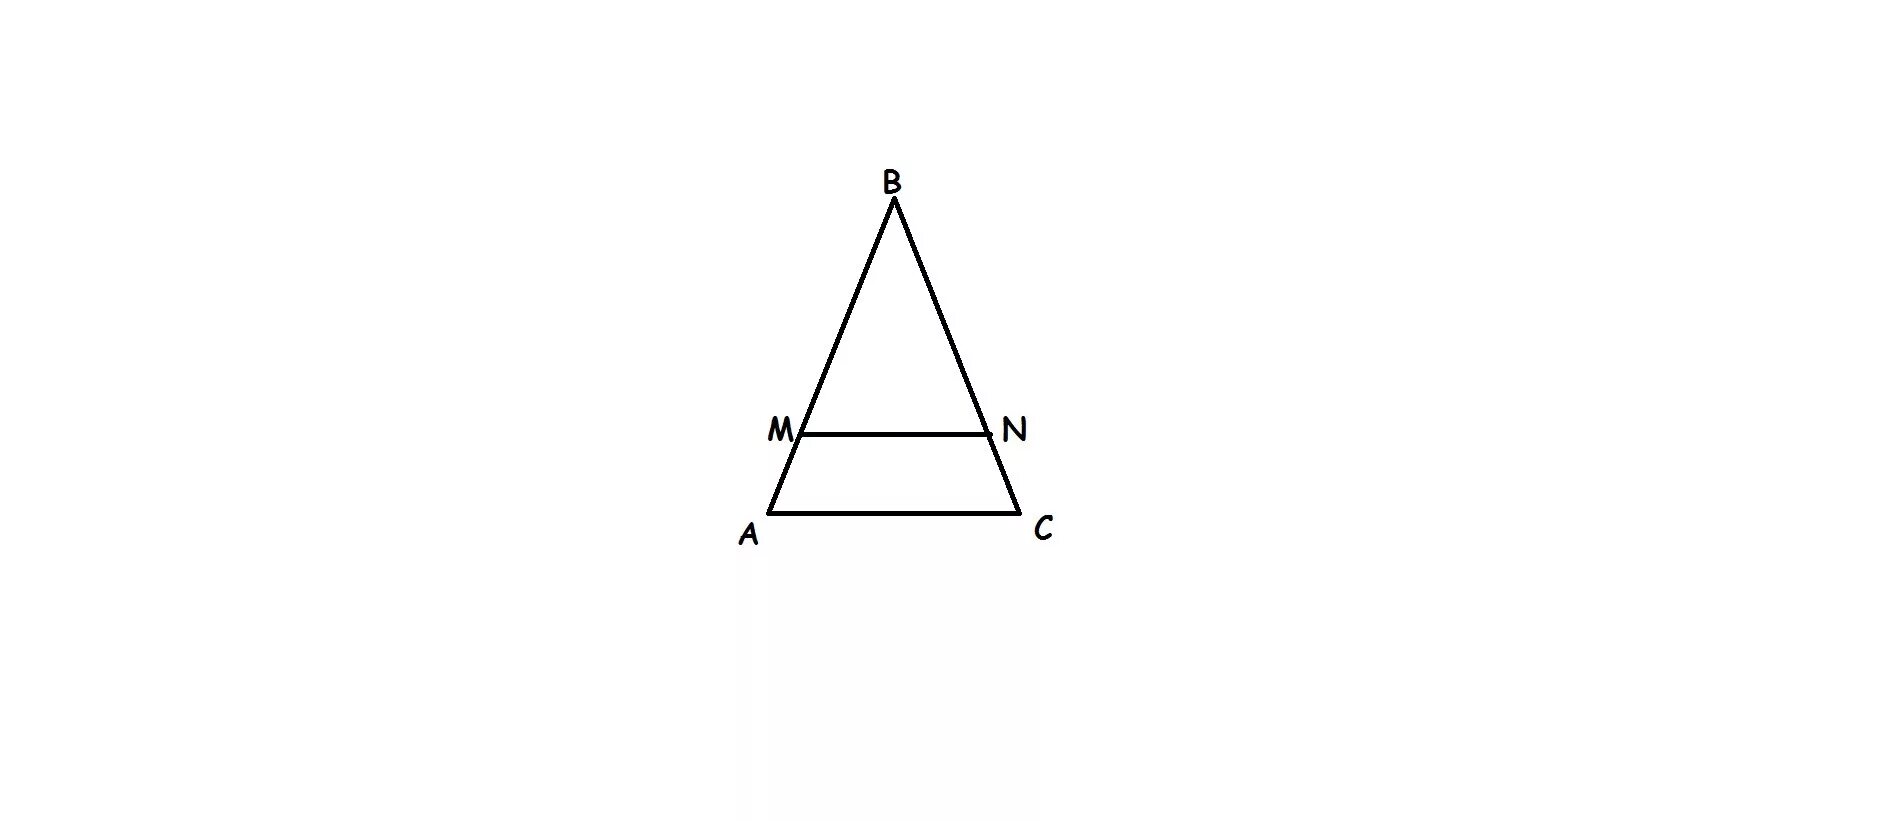 Все равносторонние треугольники подобны верно или. Треугольник ABC треугольнику ADC. Треугольник АВС рисунок. Треугольник на белом фоне ABC. ABC ADC доказать.